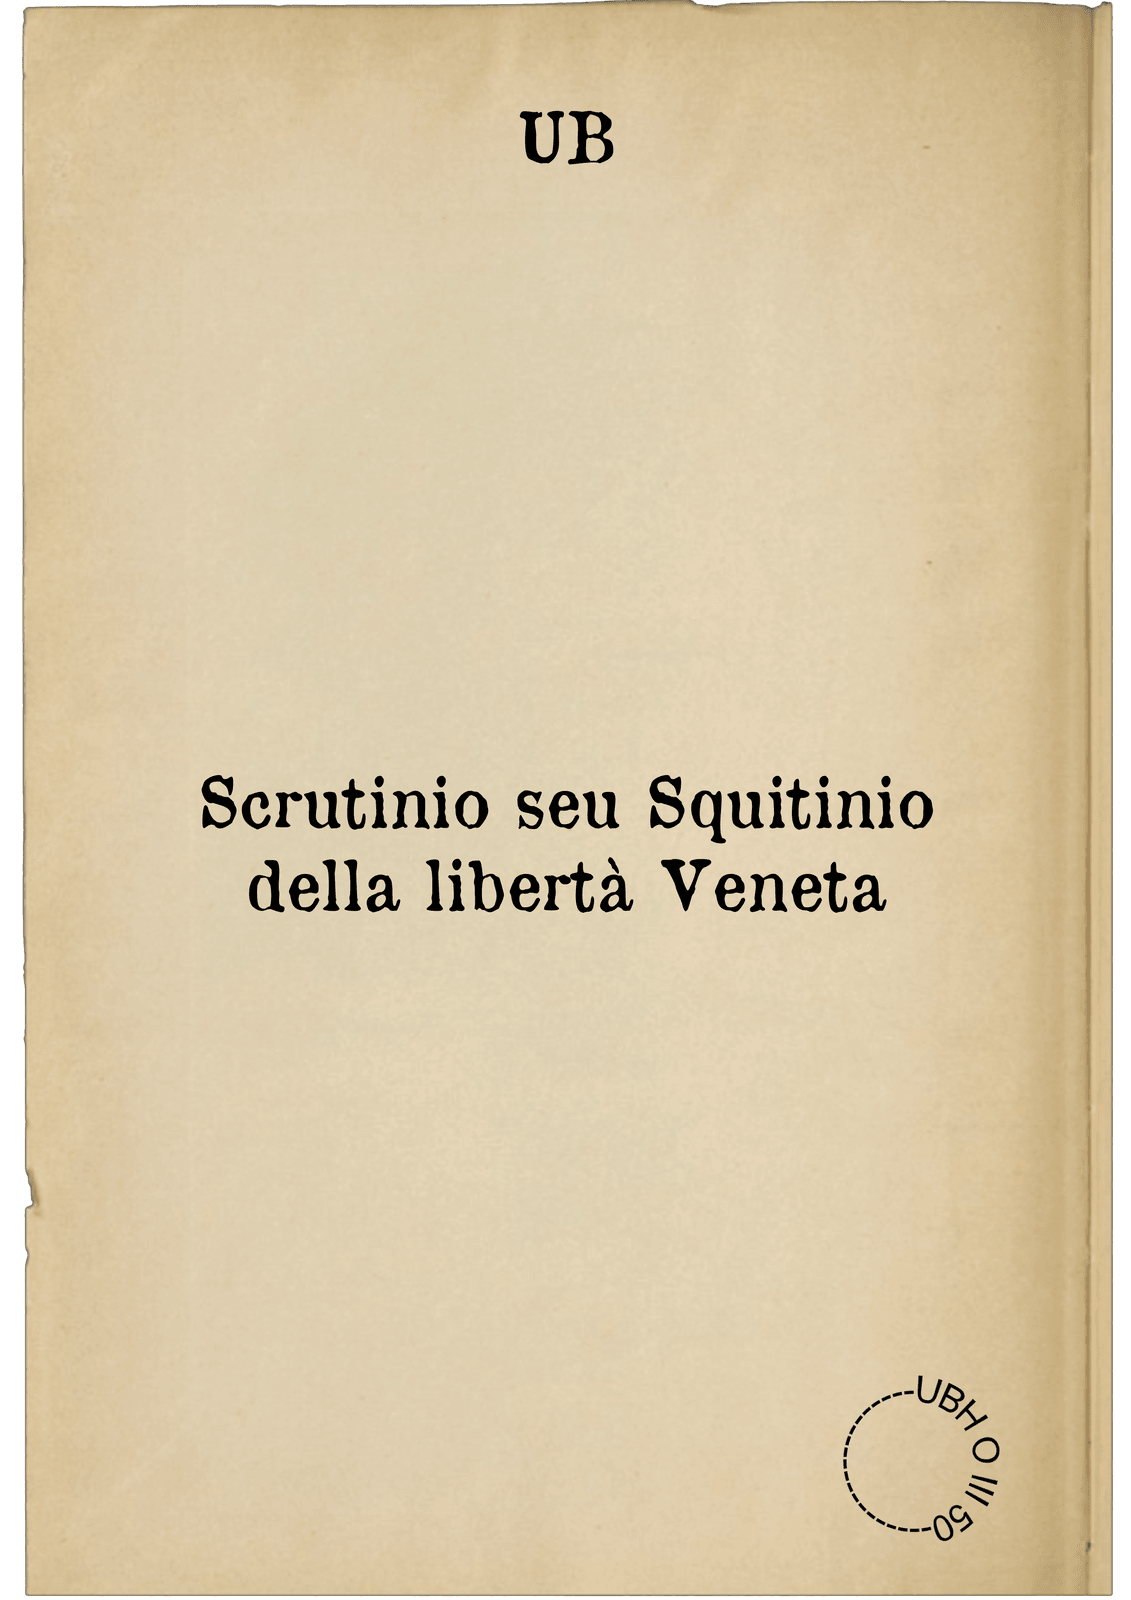 Scrutinio seu Squitinio della libertà Veneta